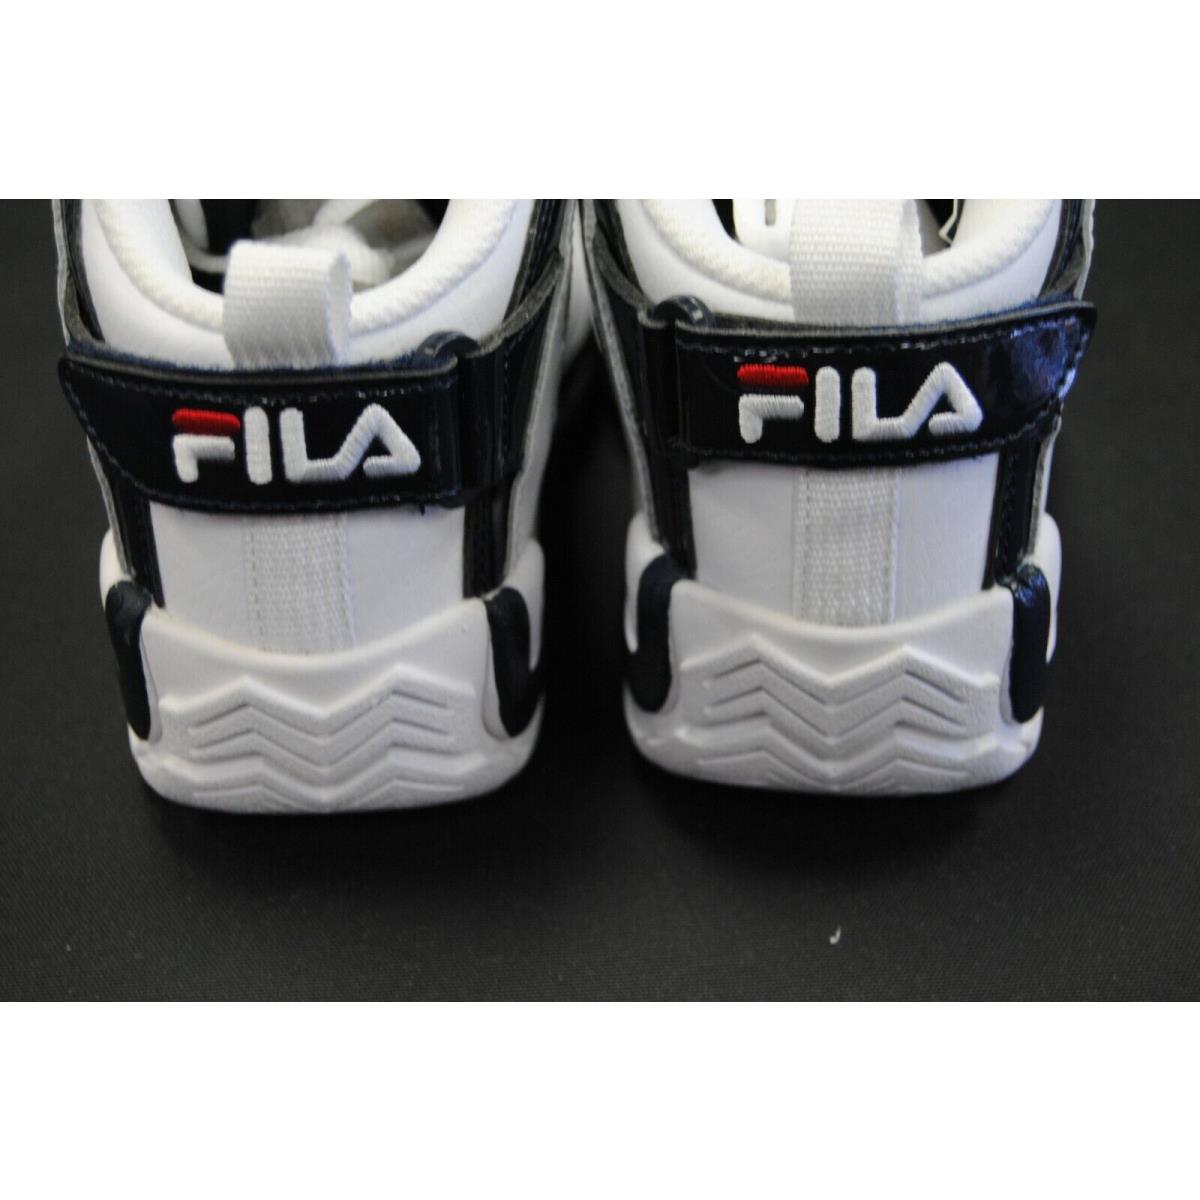 Fila shoes GRANT HILL - Multi-Color 6